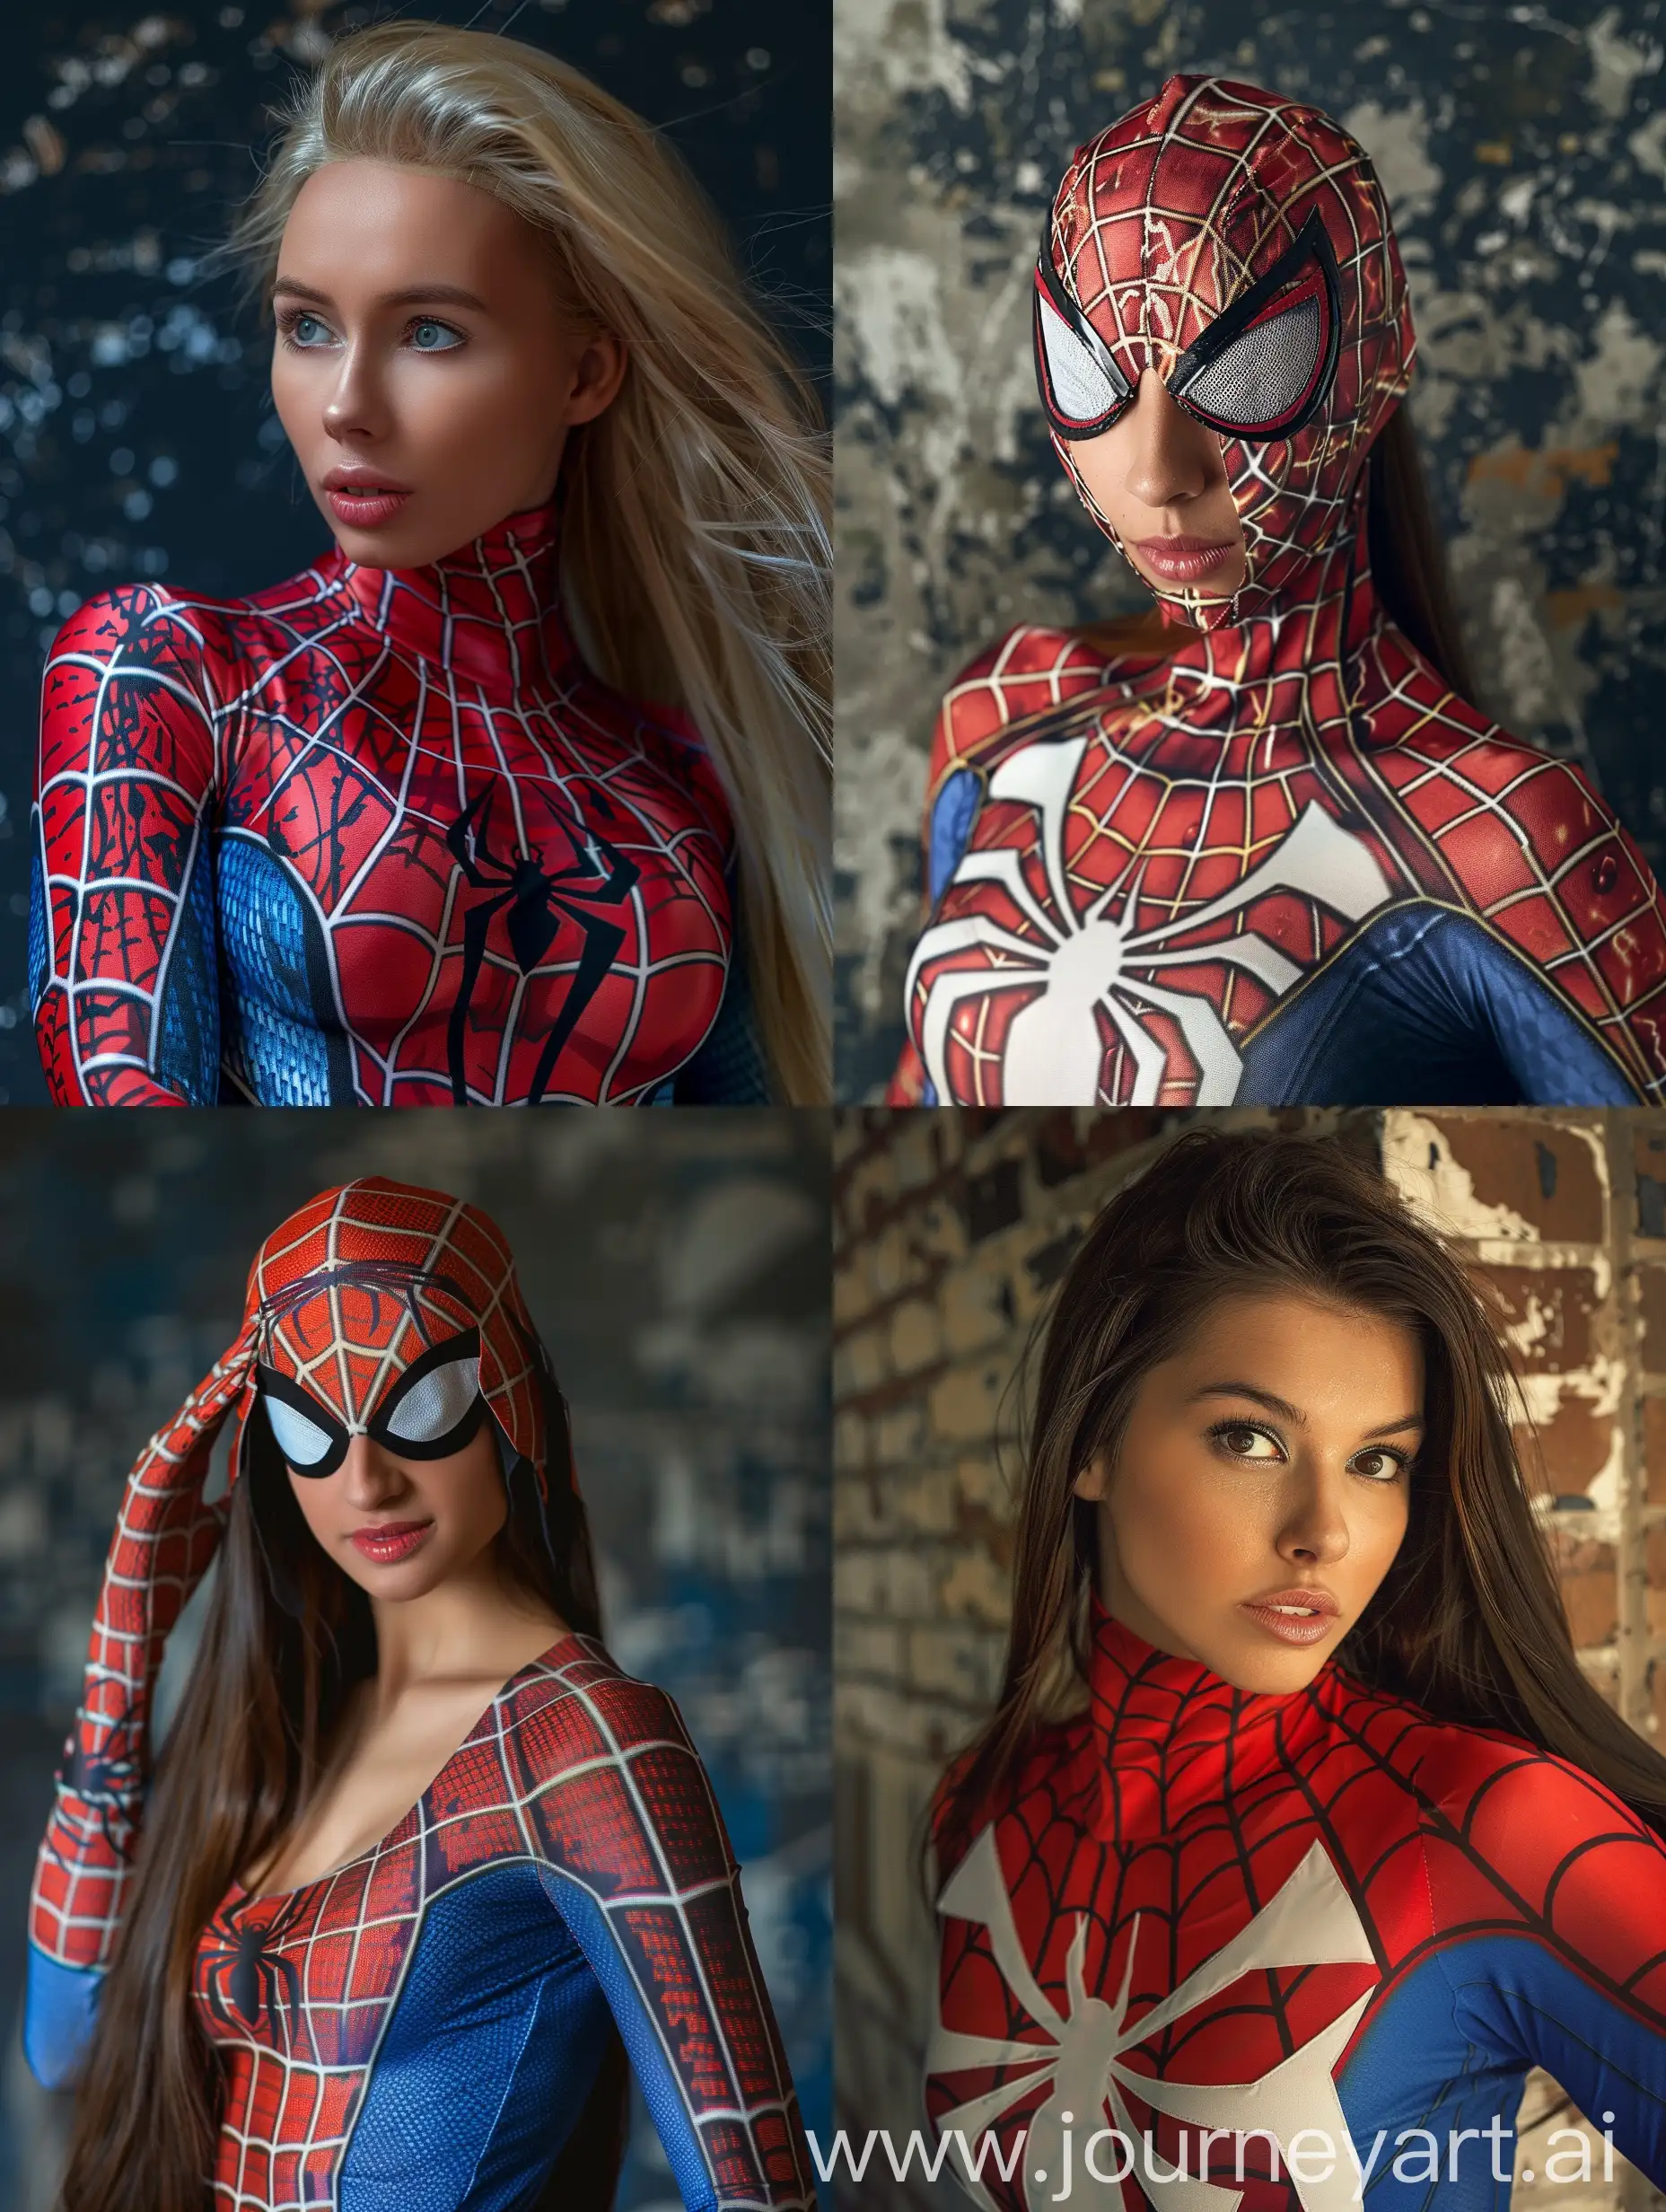 Seorang wanita cantik Amerika memakai kostum spiderman. Wanita itu berpose layaknya spiderman. Foto asli. Sangat detail. 